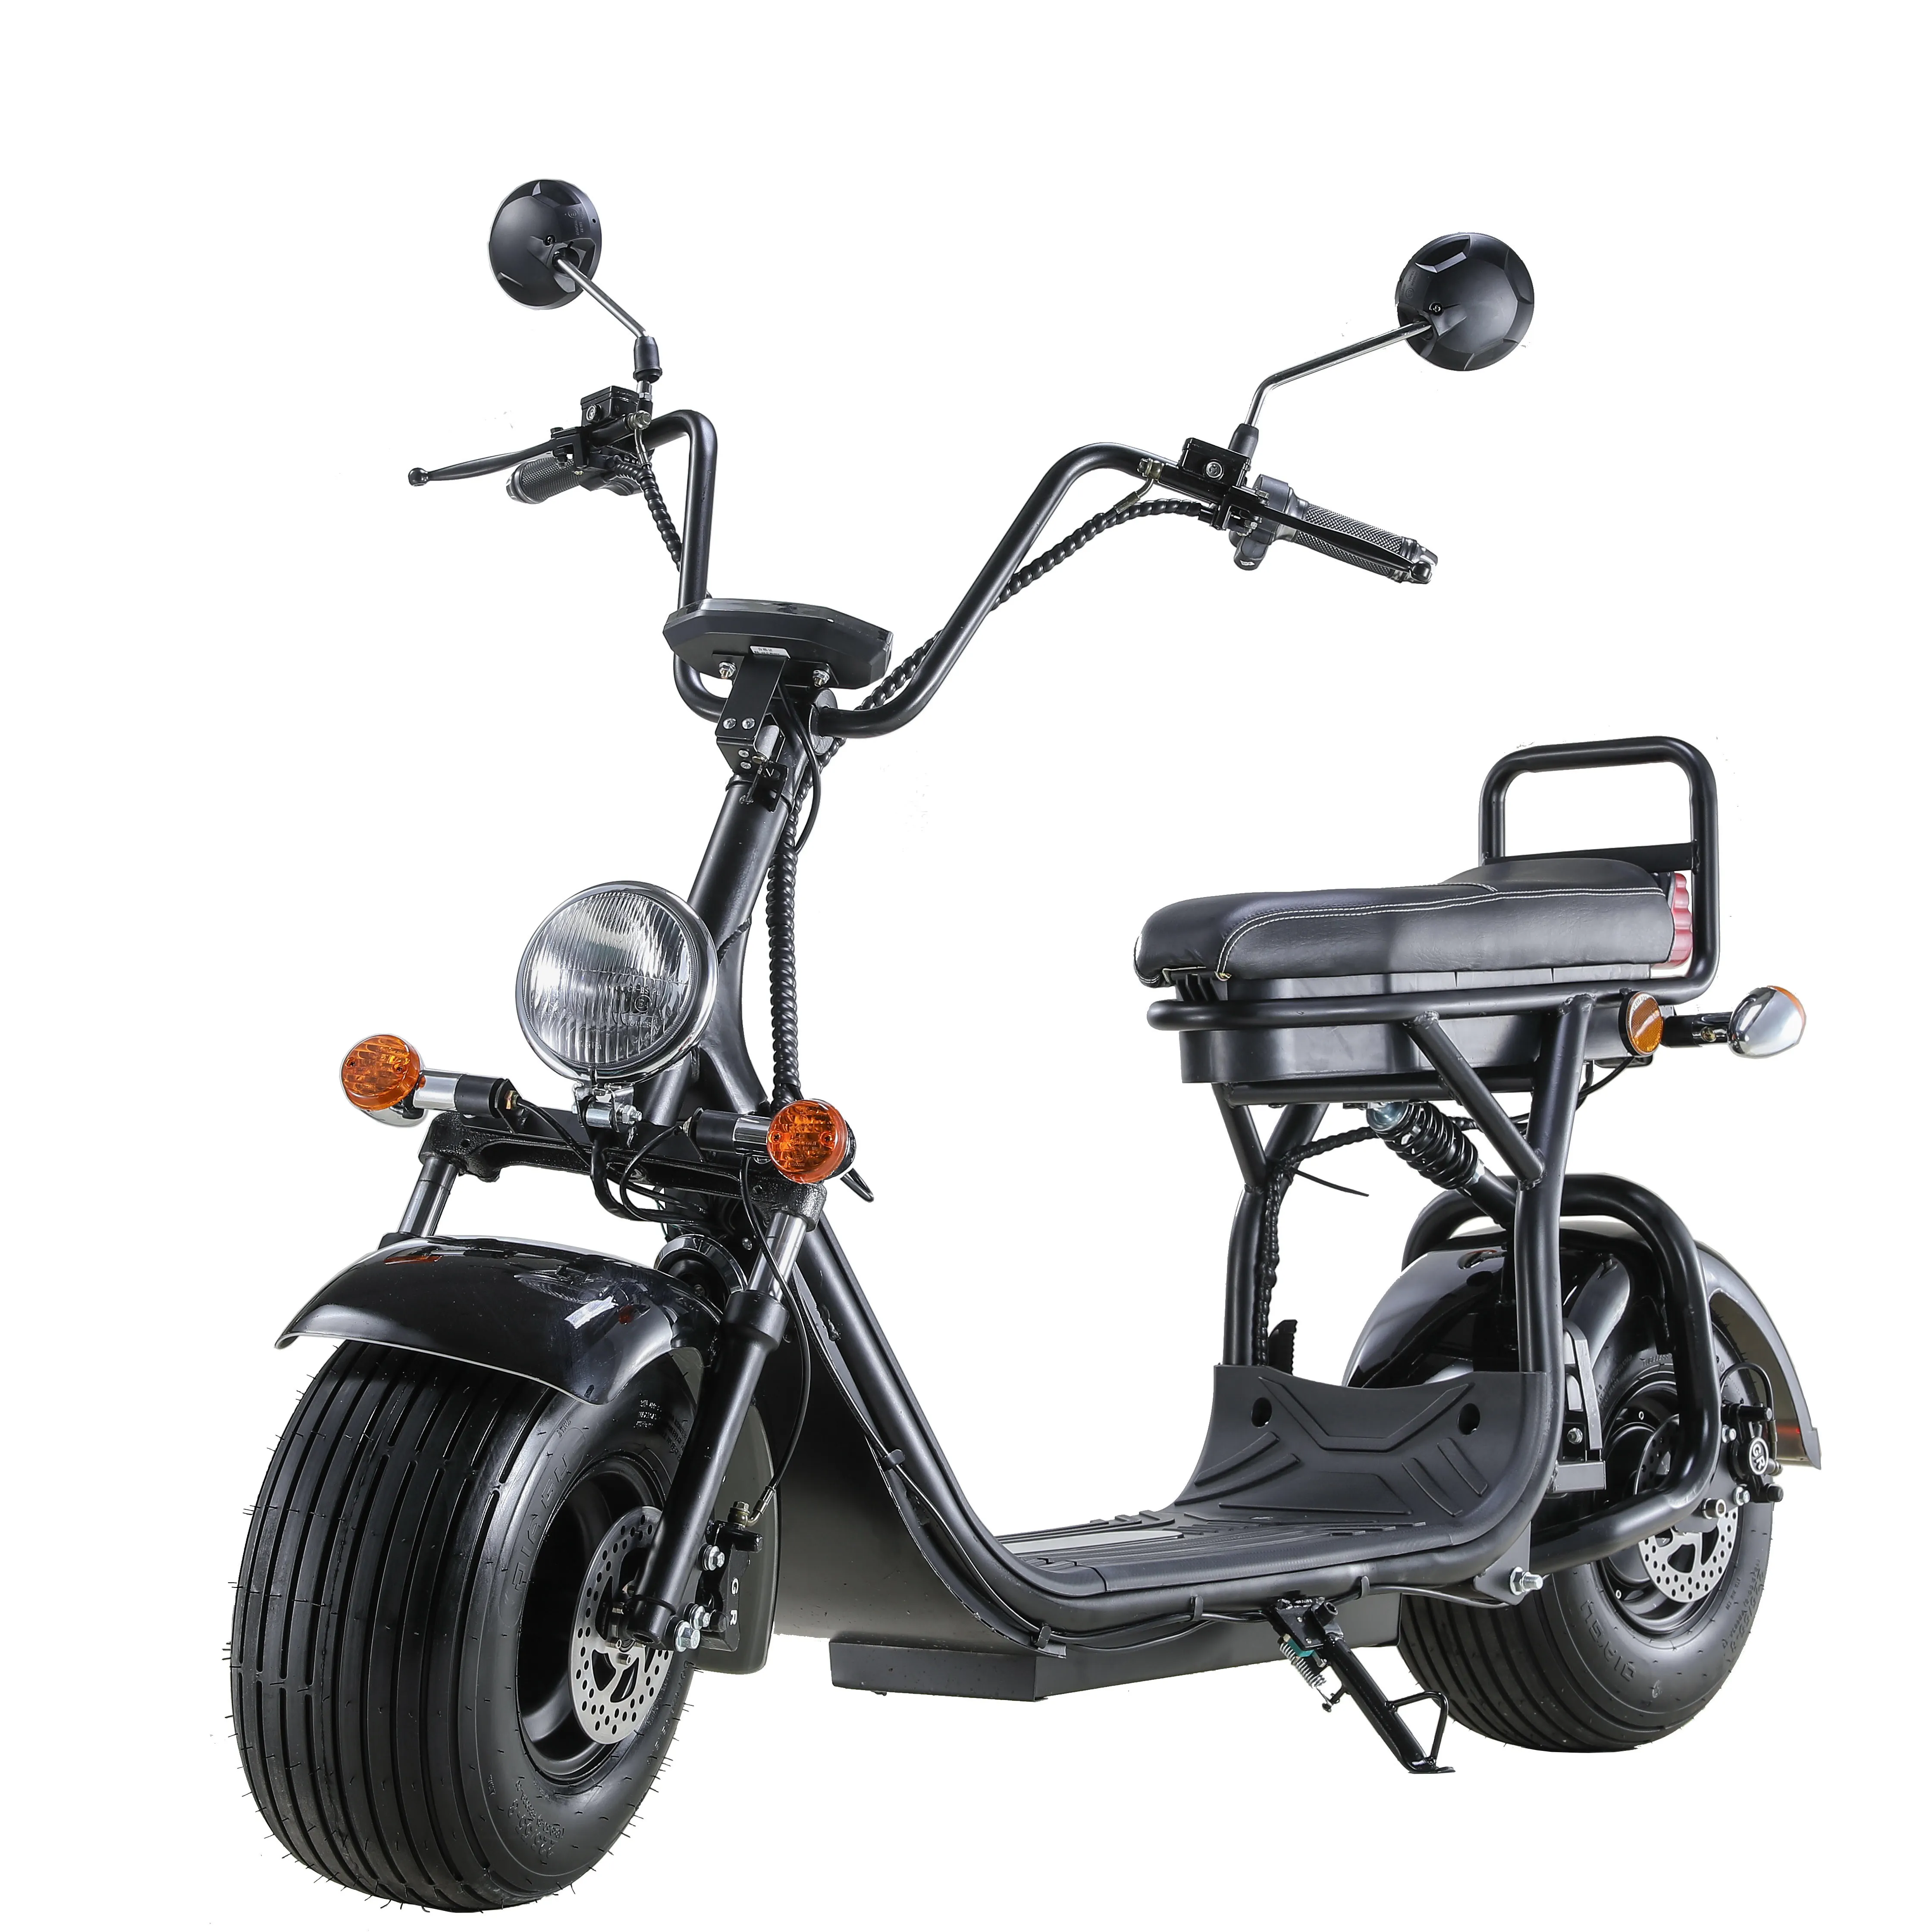 Casco Motocicleta Choopeモーターサイクル/自転車/Citycoco/電動スクーター/バイクシェルプロトタイプ